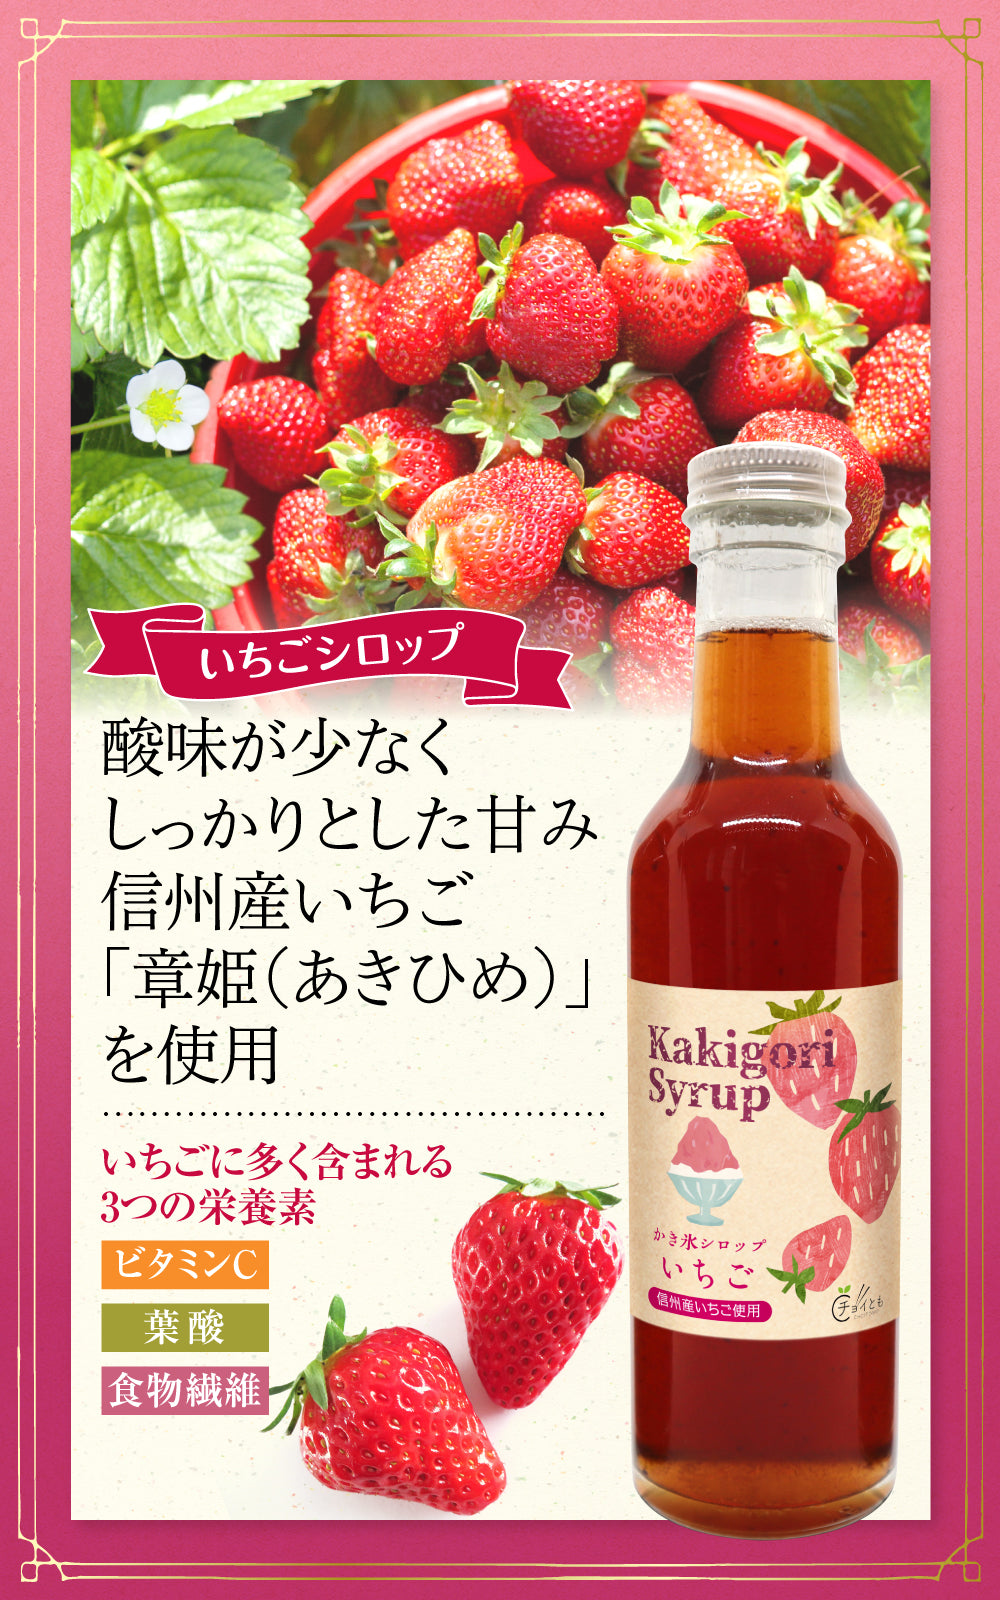 Choitomo かき氷シロップ いちご・ブルーベリー・抹茶の3種セット